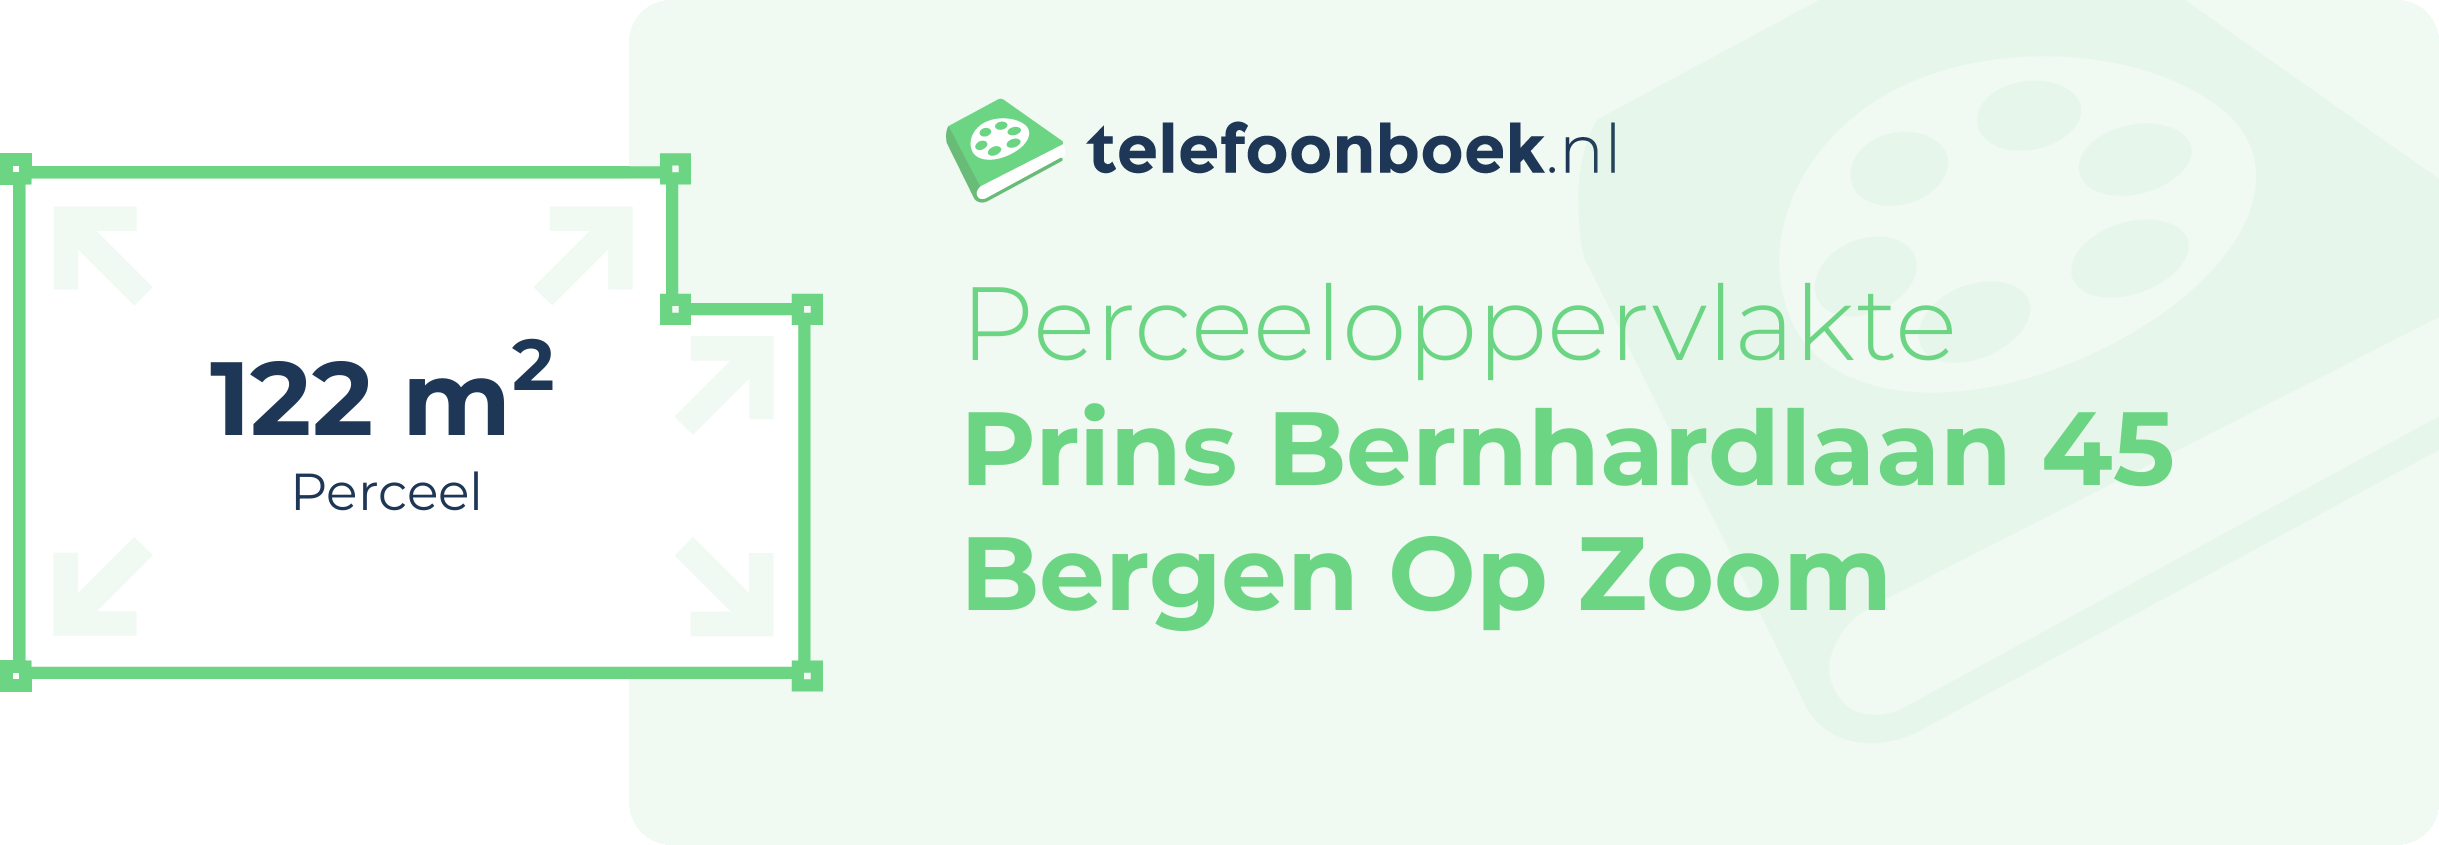 Perceeloppervlakte Prins Bernhardlaan 45 Bergen Op Zoom